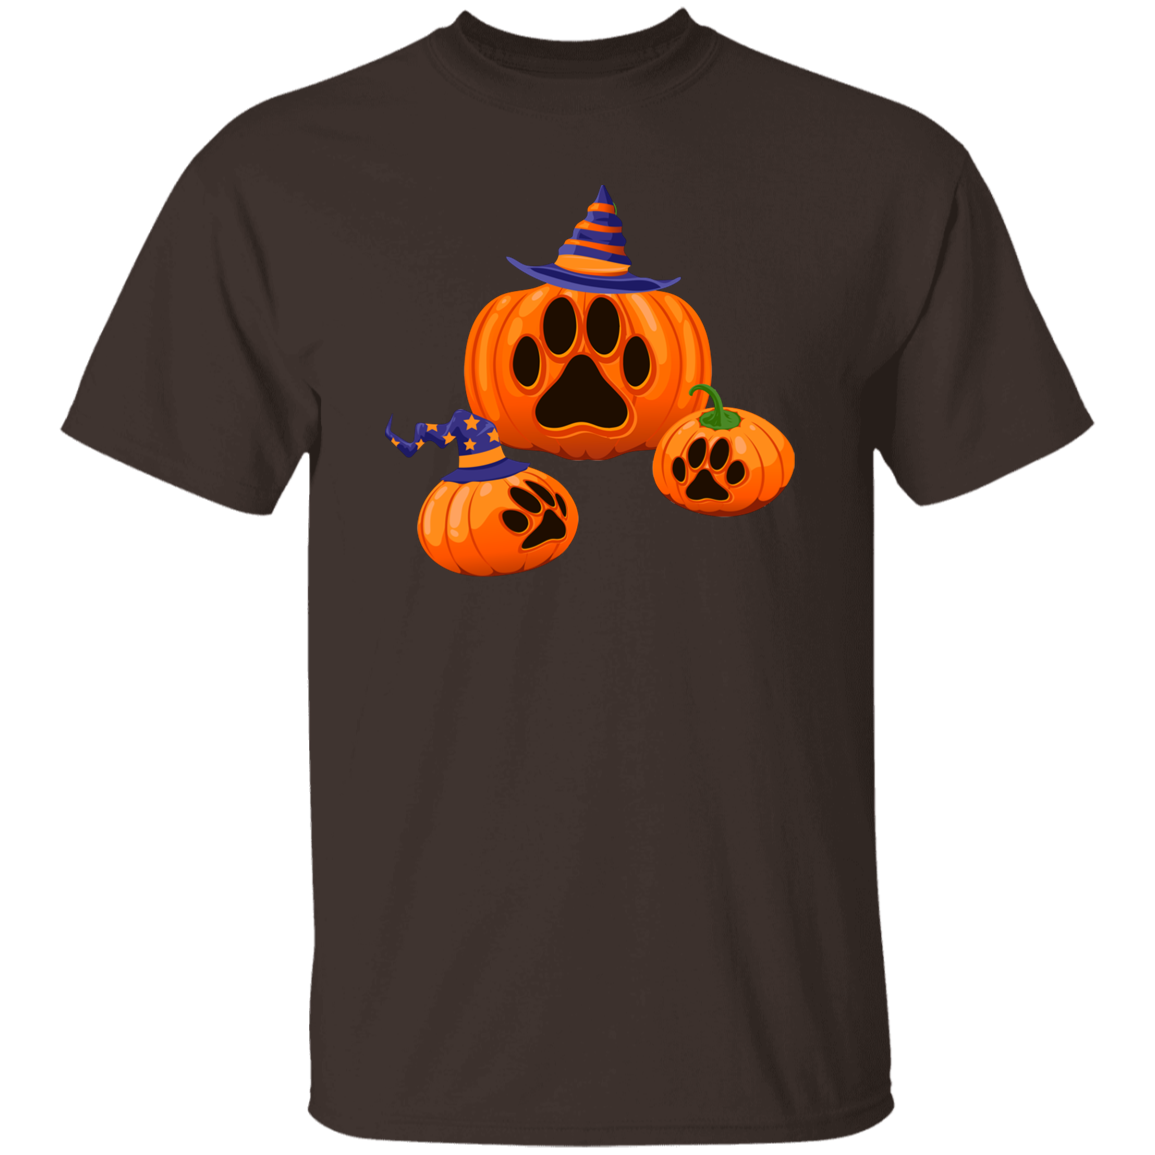 Halloween Paw Print Pumpkin T-Shirt